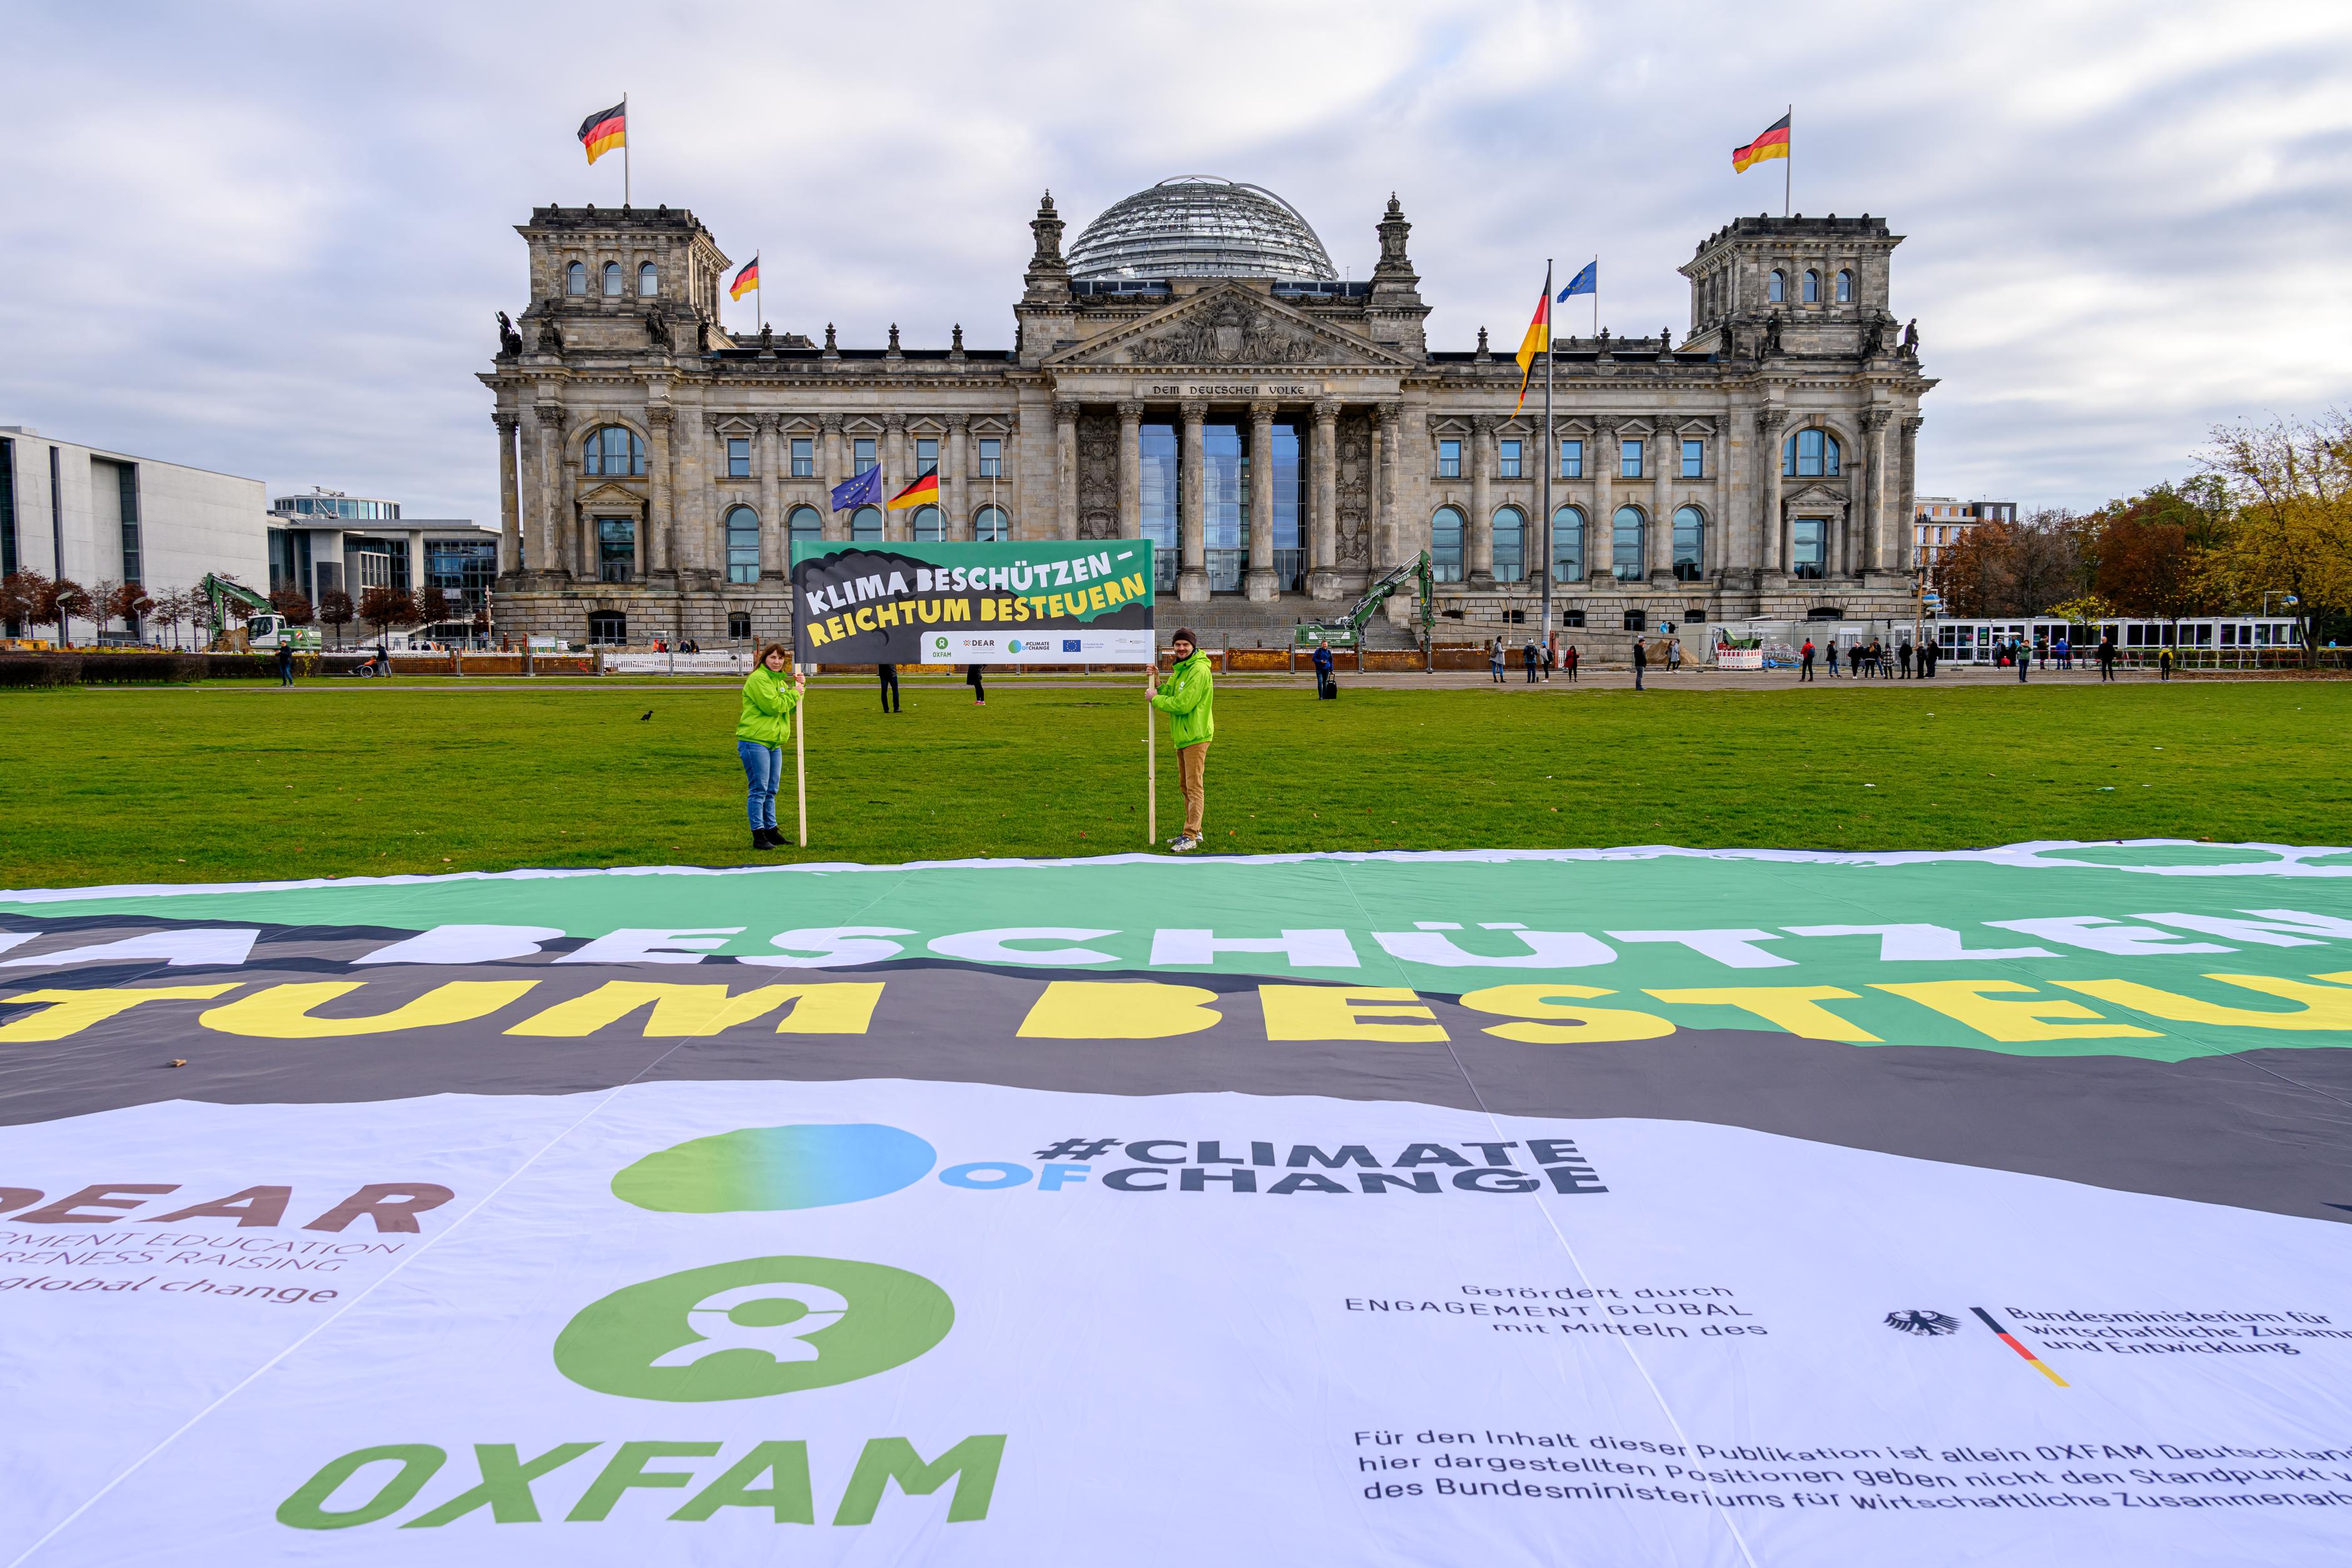 Oxfam-Aktivist*innen, mit grünen Jacken bekleidet, stehen vor dem Reichstag und halten ein Banner mit der Aufschrift "Klima schützen - Reichtum besteuern" zwischen ihnen. Vor ihnen auf der Wiese befindet sich ein überdemensionales Transparent auf der Wiese.